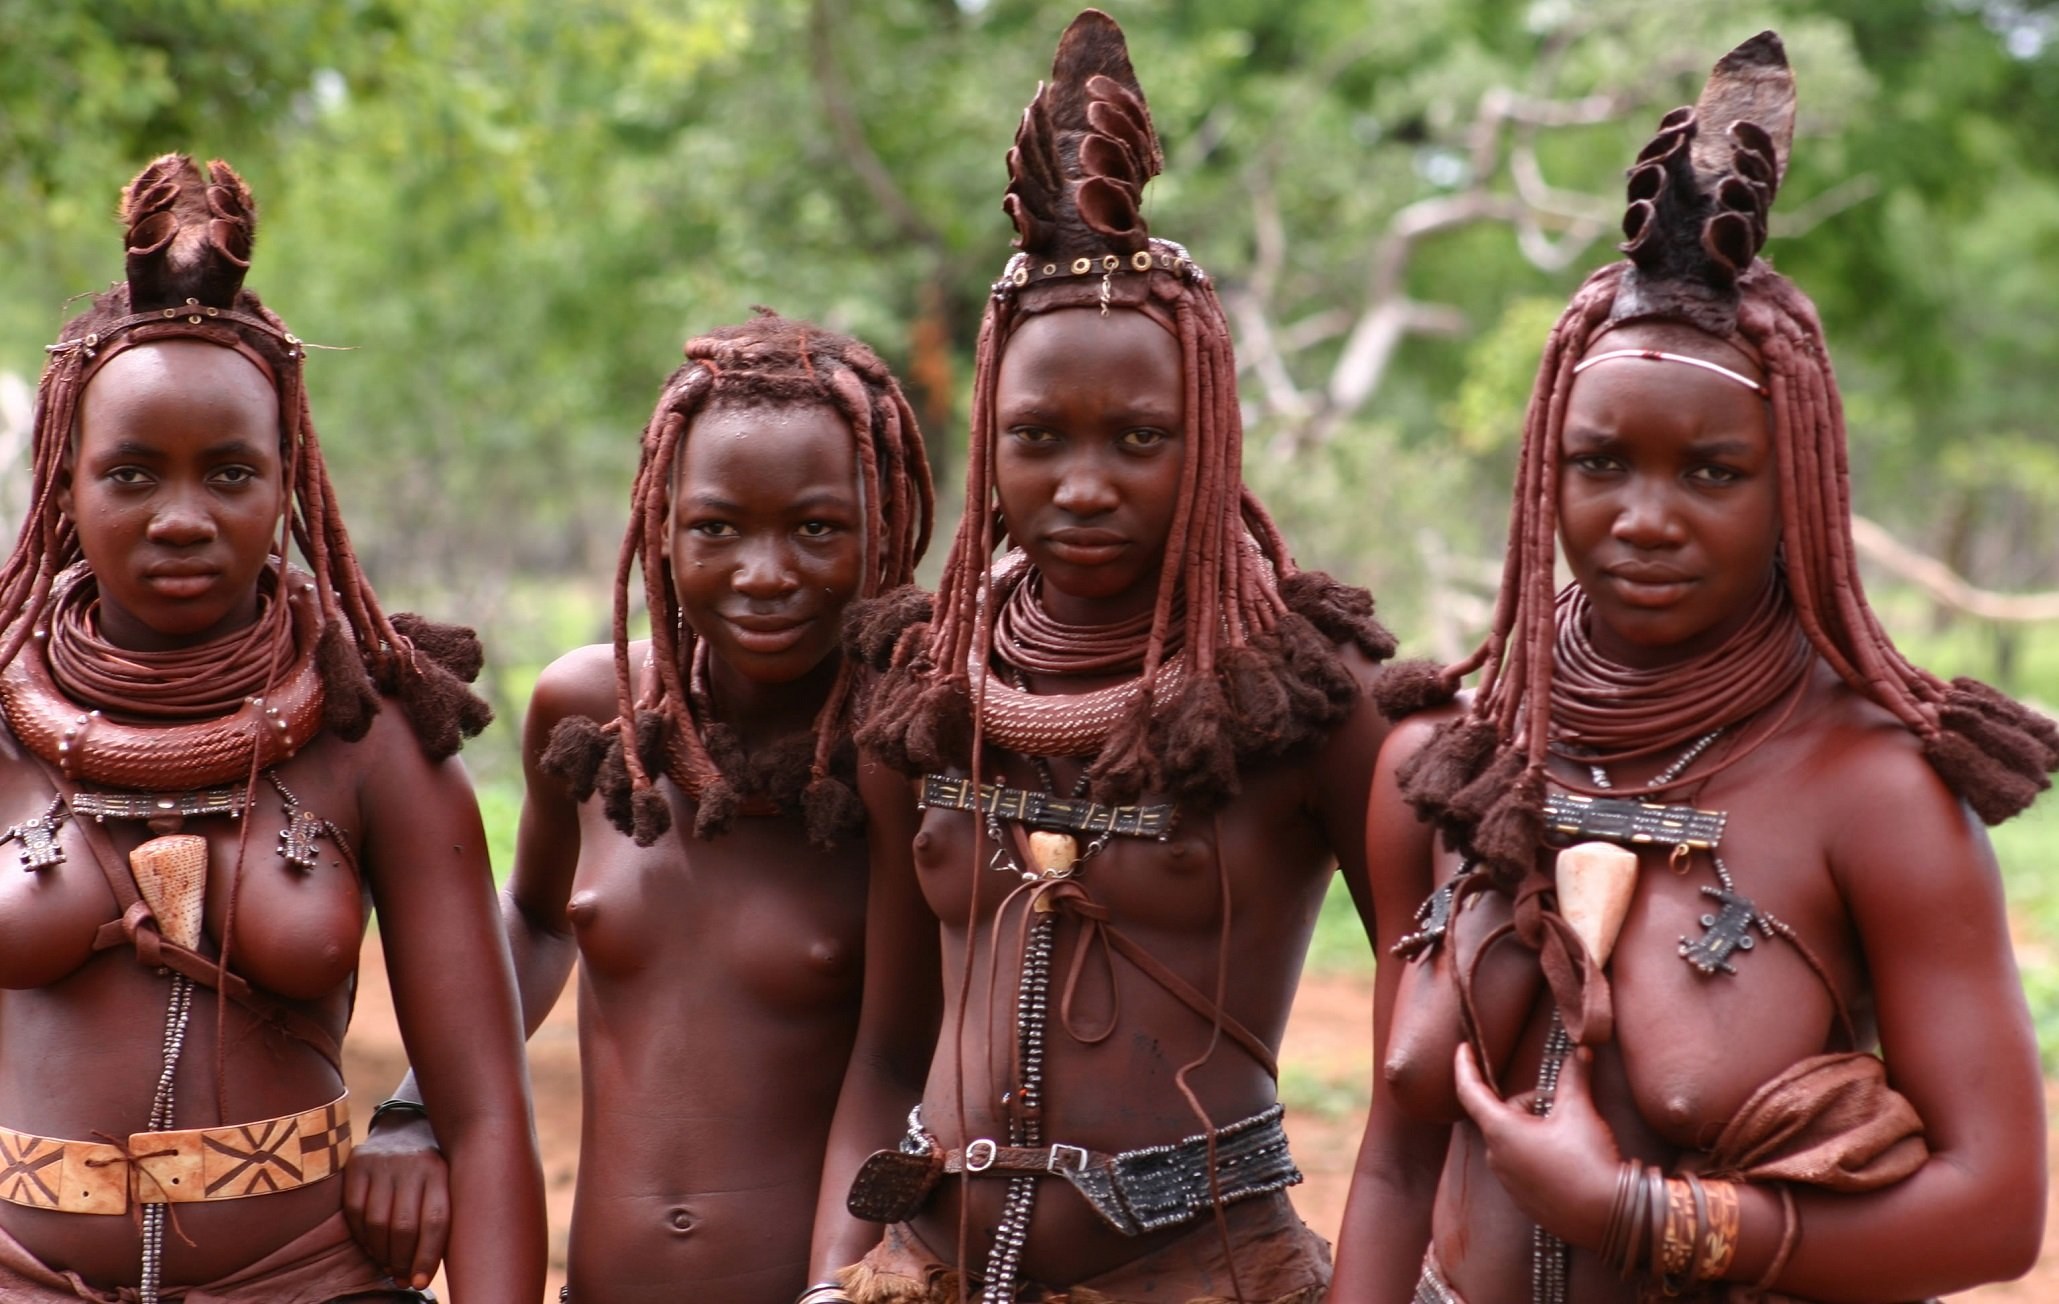 Tribal nudes